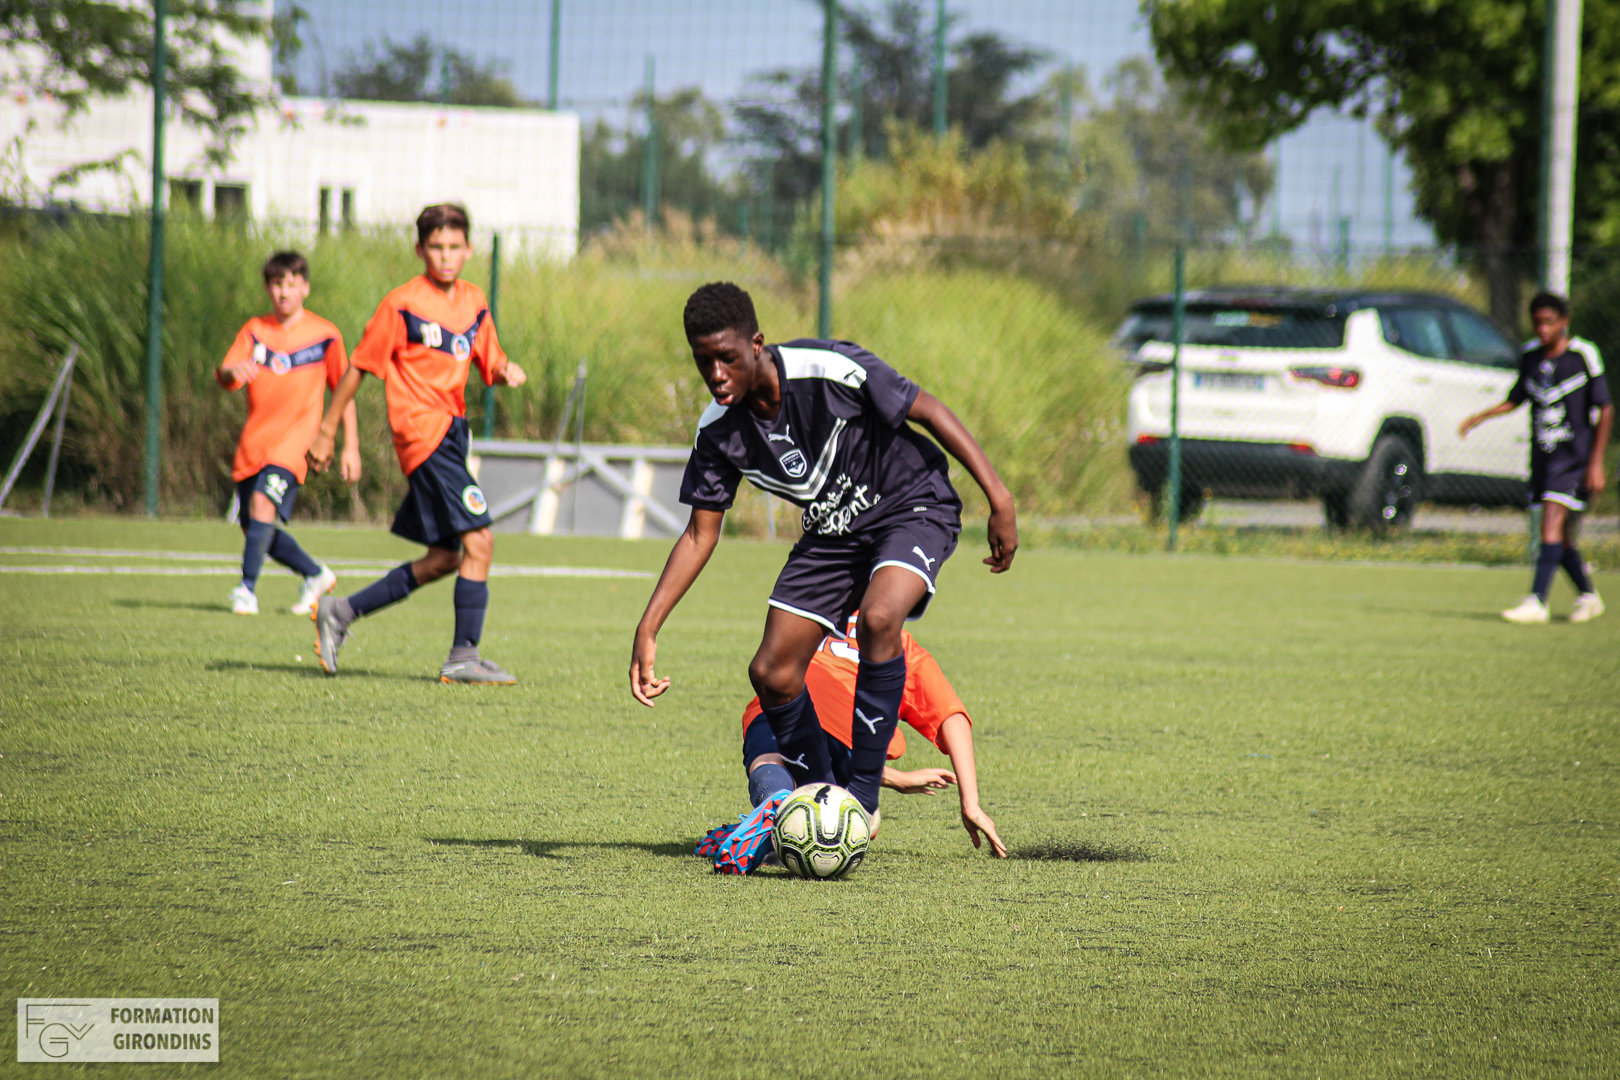 Cfa Girondins : Les U14 ont cartonné contre le FC Bassin d'Arcachon - Formation Girondins 